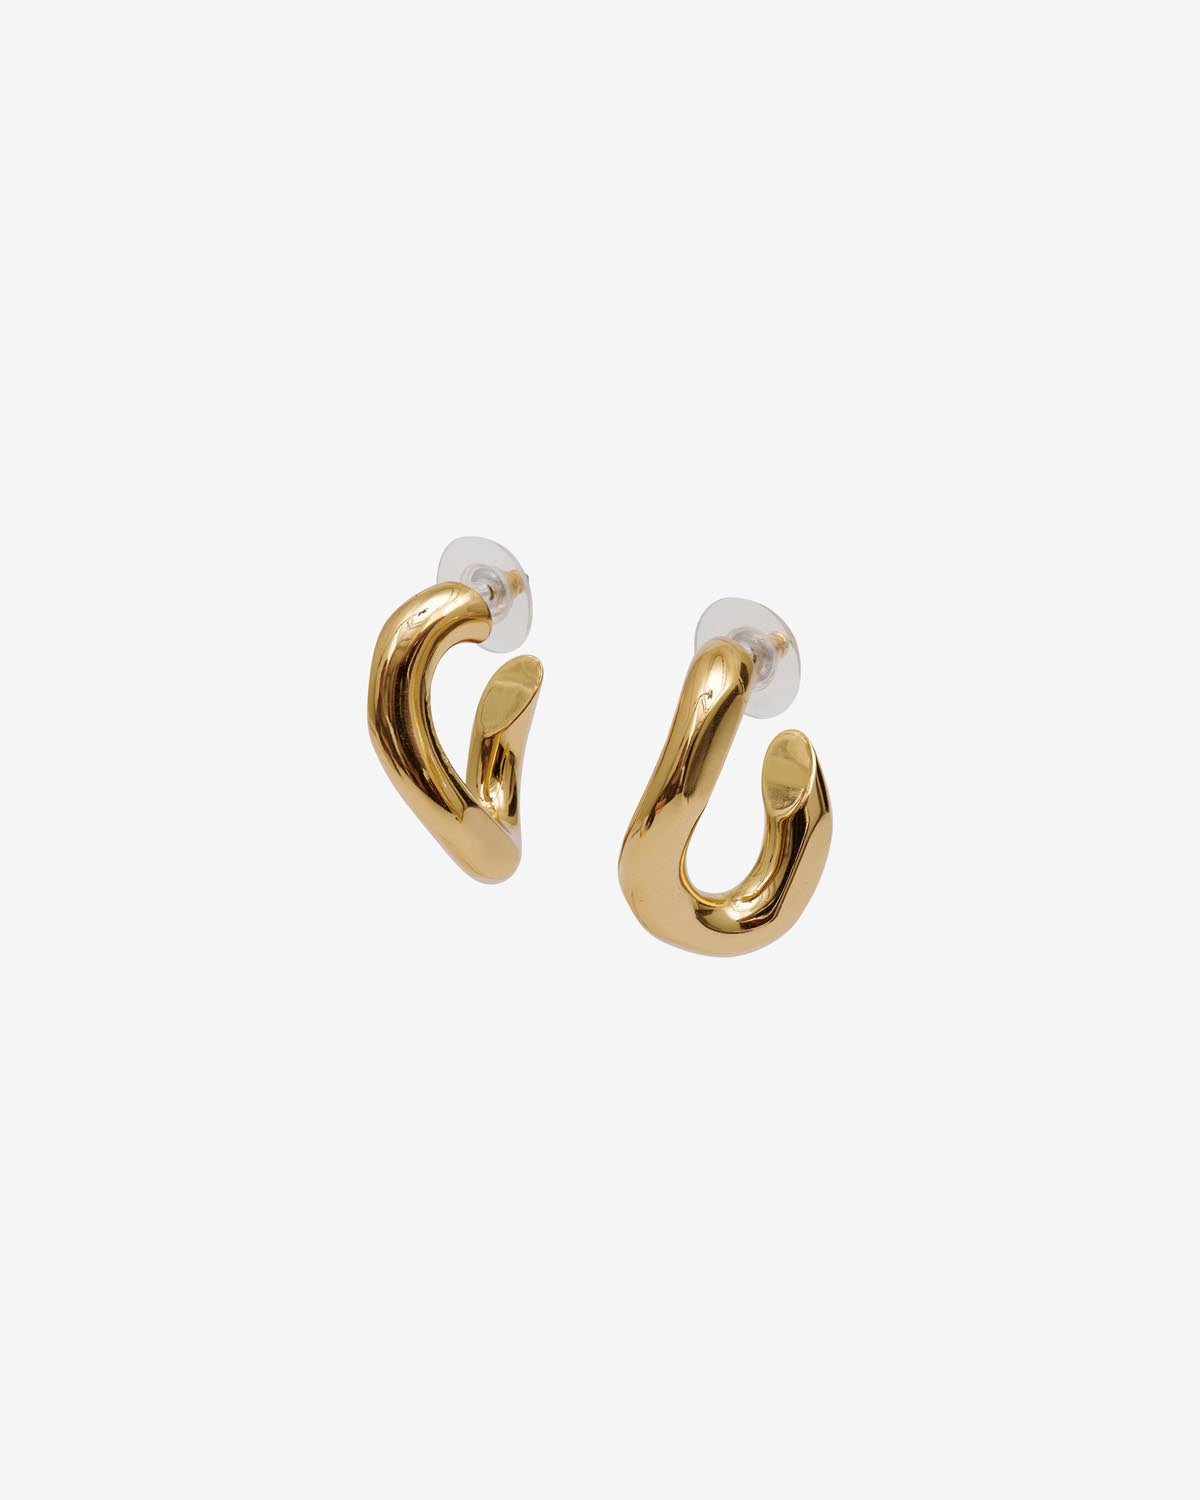 Links earrings Woman Gold 9